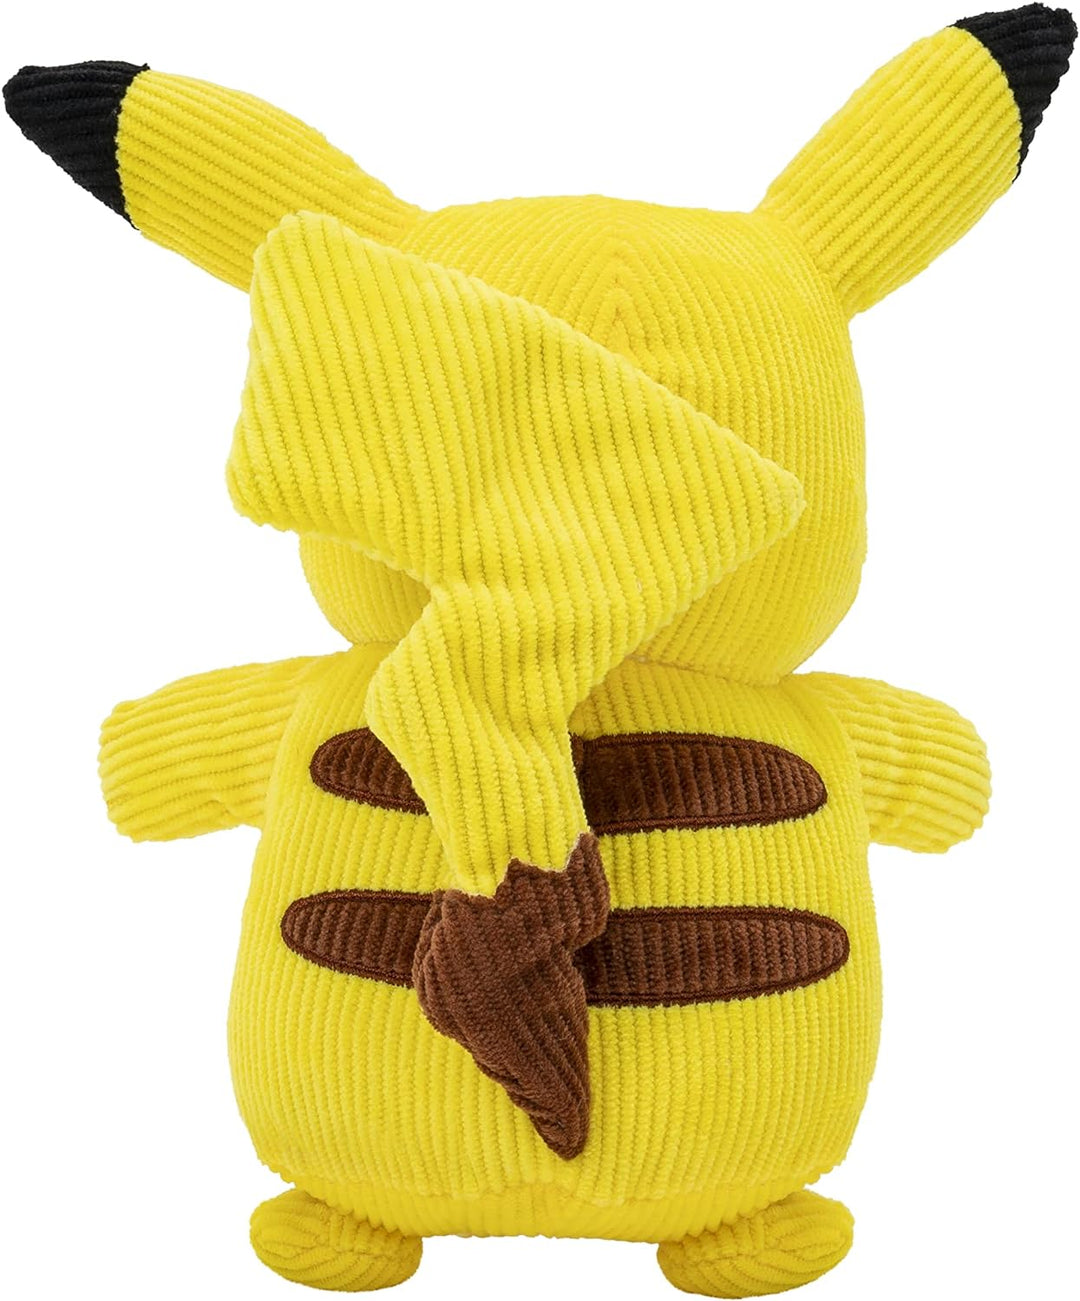 Pokemon 20cm Select Corduroy Plush - Pikachu